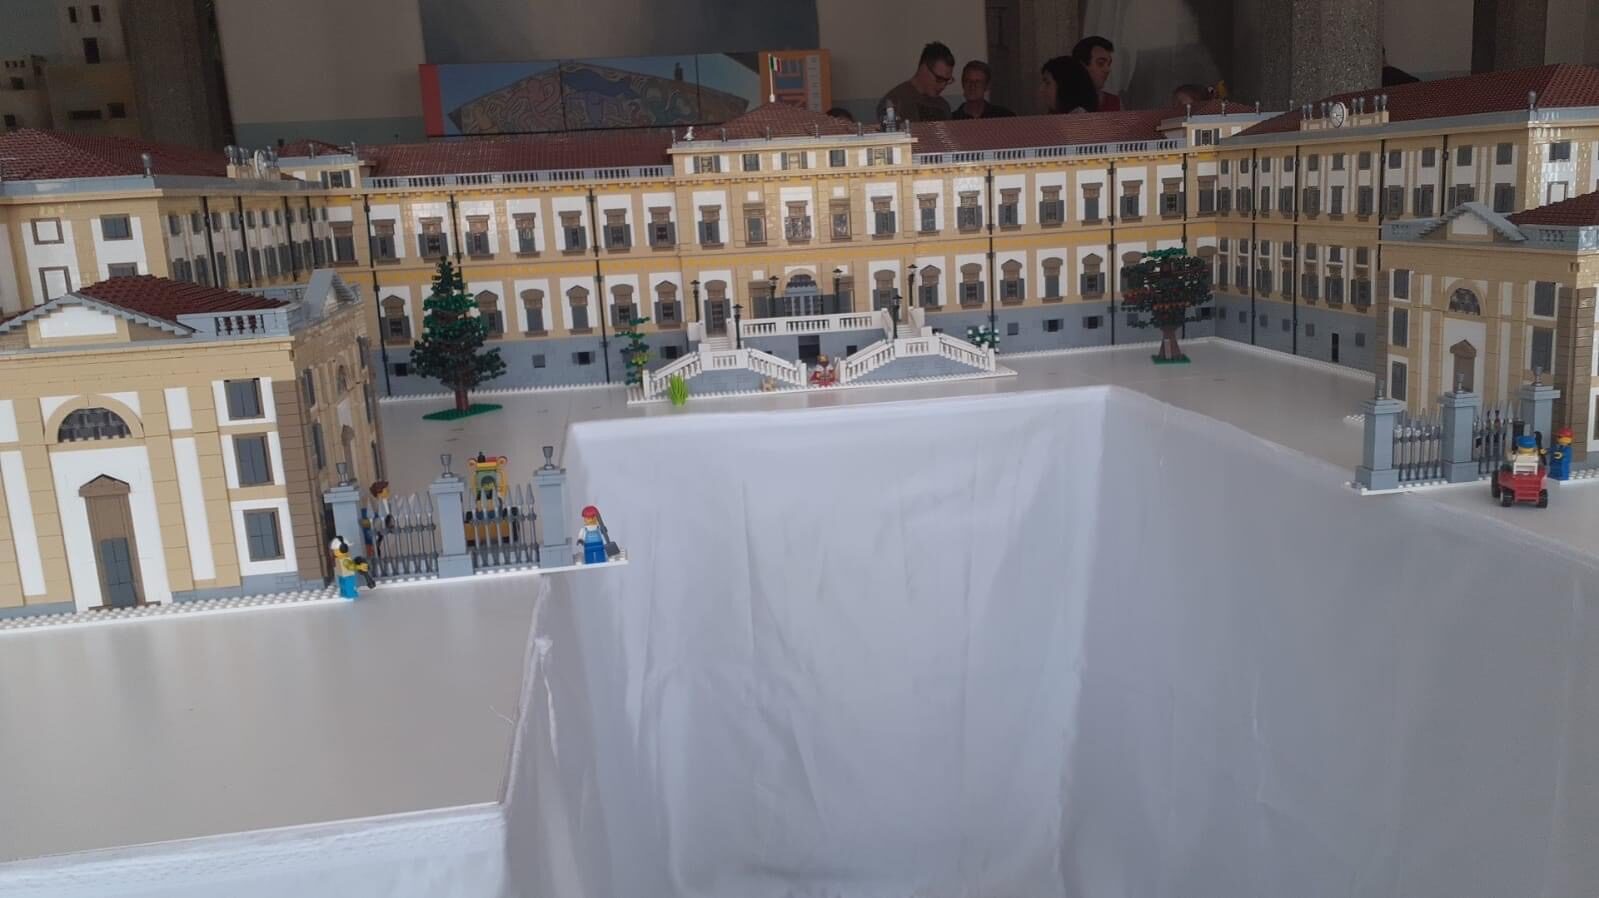 La Villa reale di Monza Lego alla mostra per Gianluca 